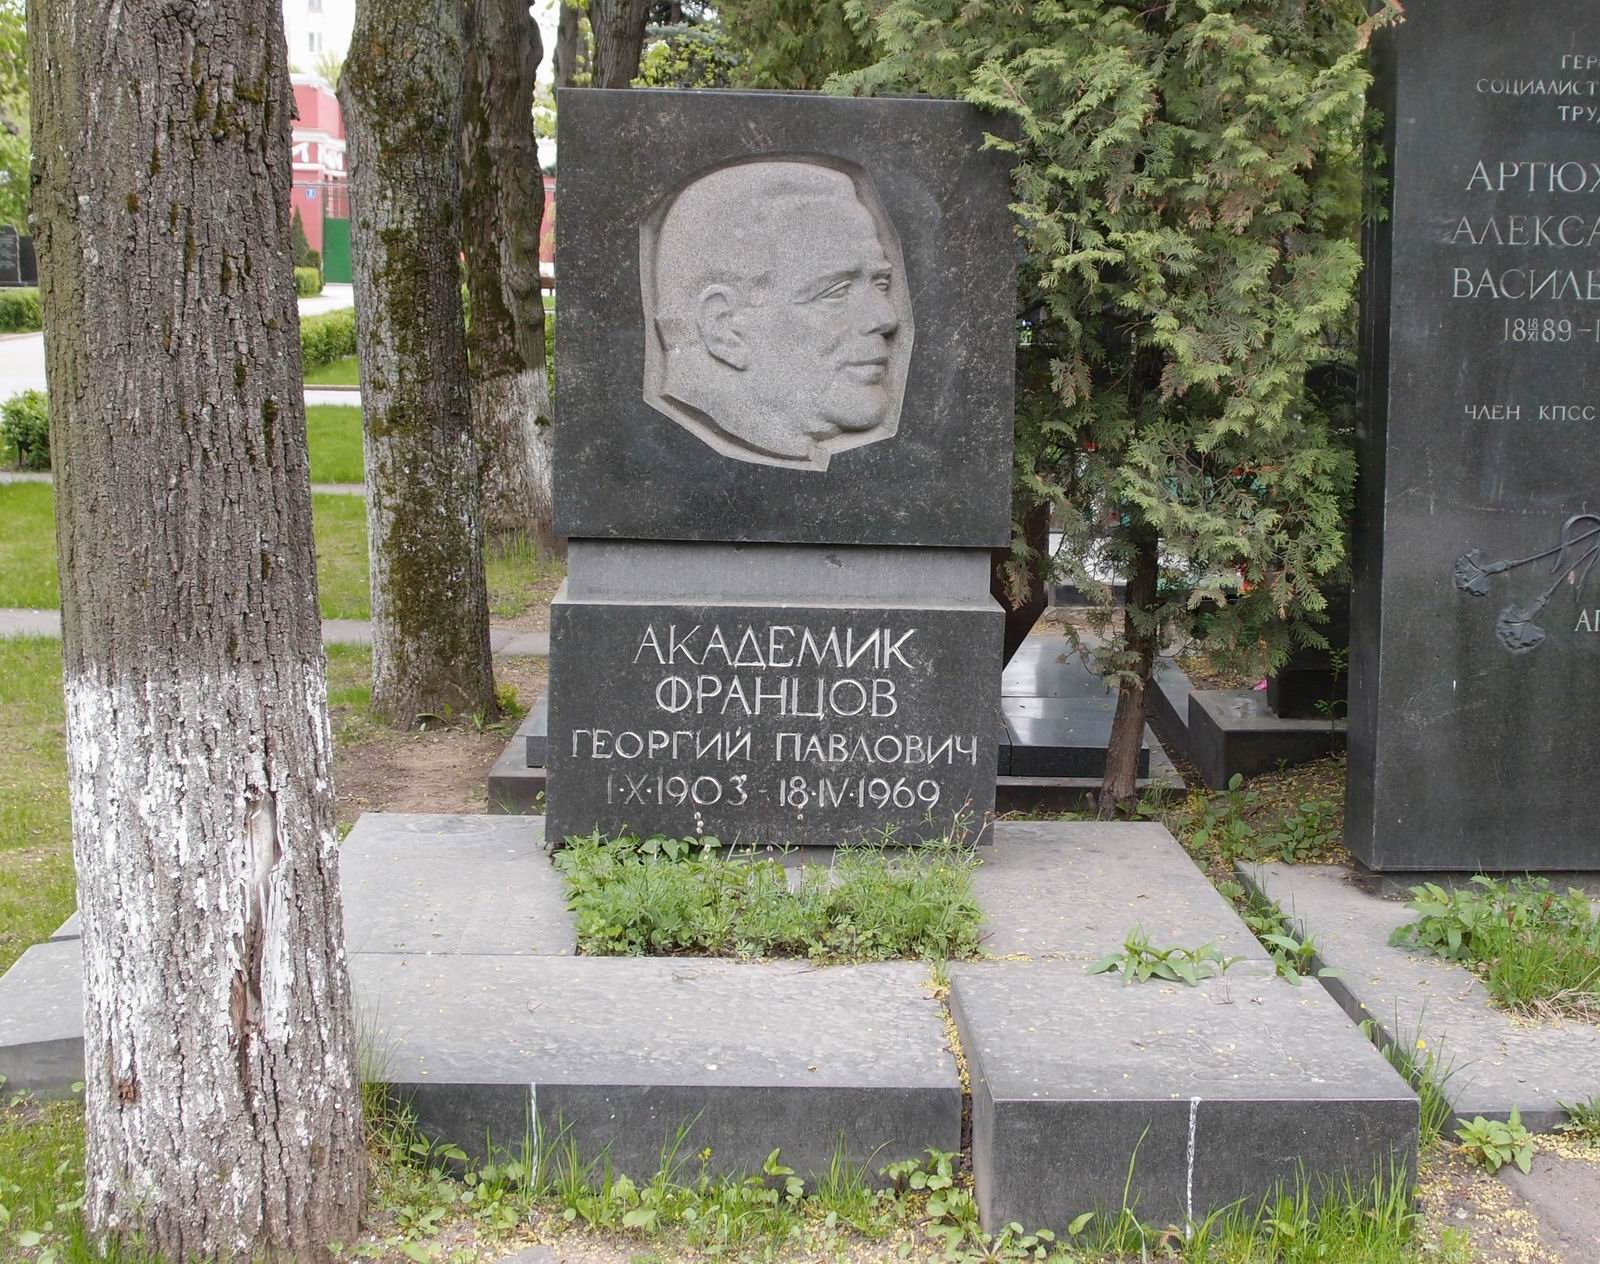 Памятник на могиле Францова Г.П. (1903-1969), ск. В.Шелов, арх. В.Голубев, на Новодевичьем кладбище (6-22-1).